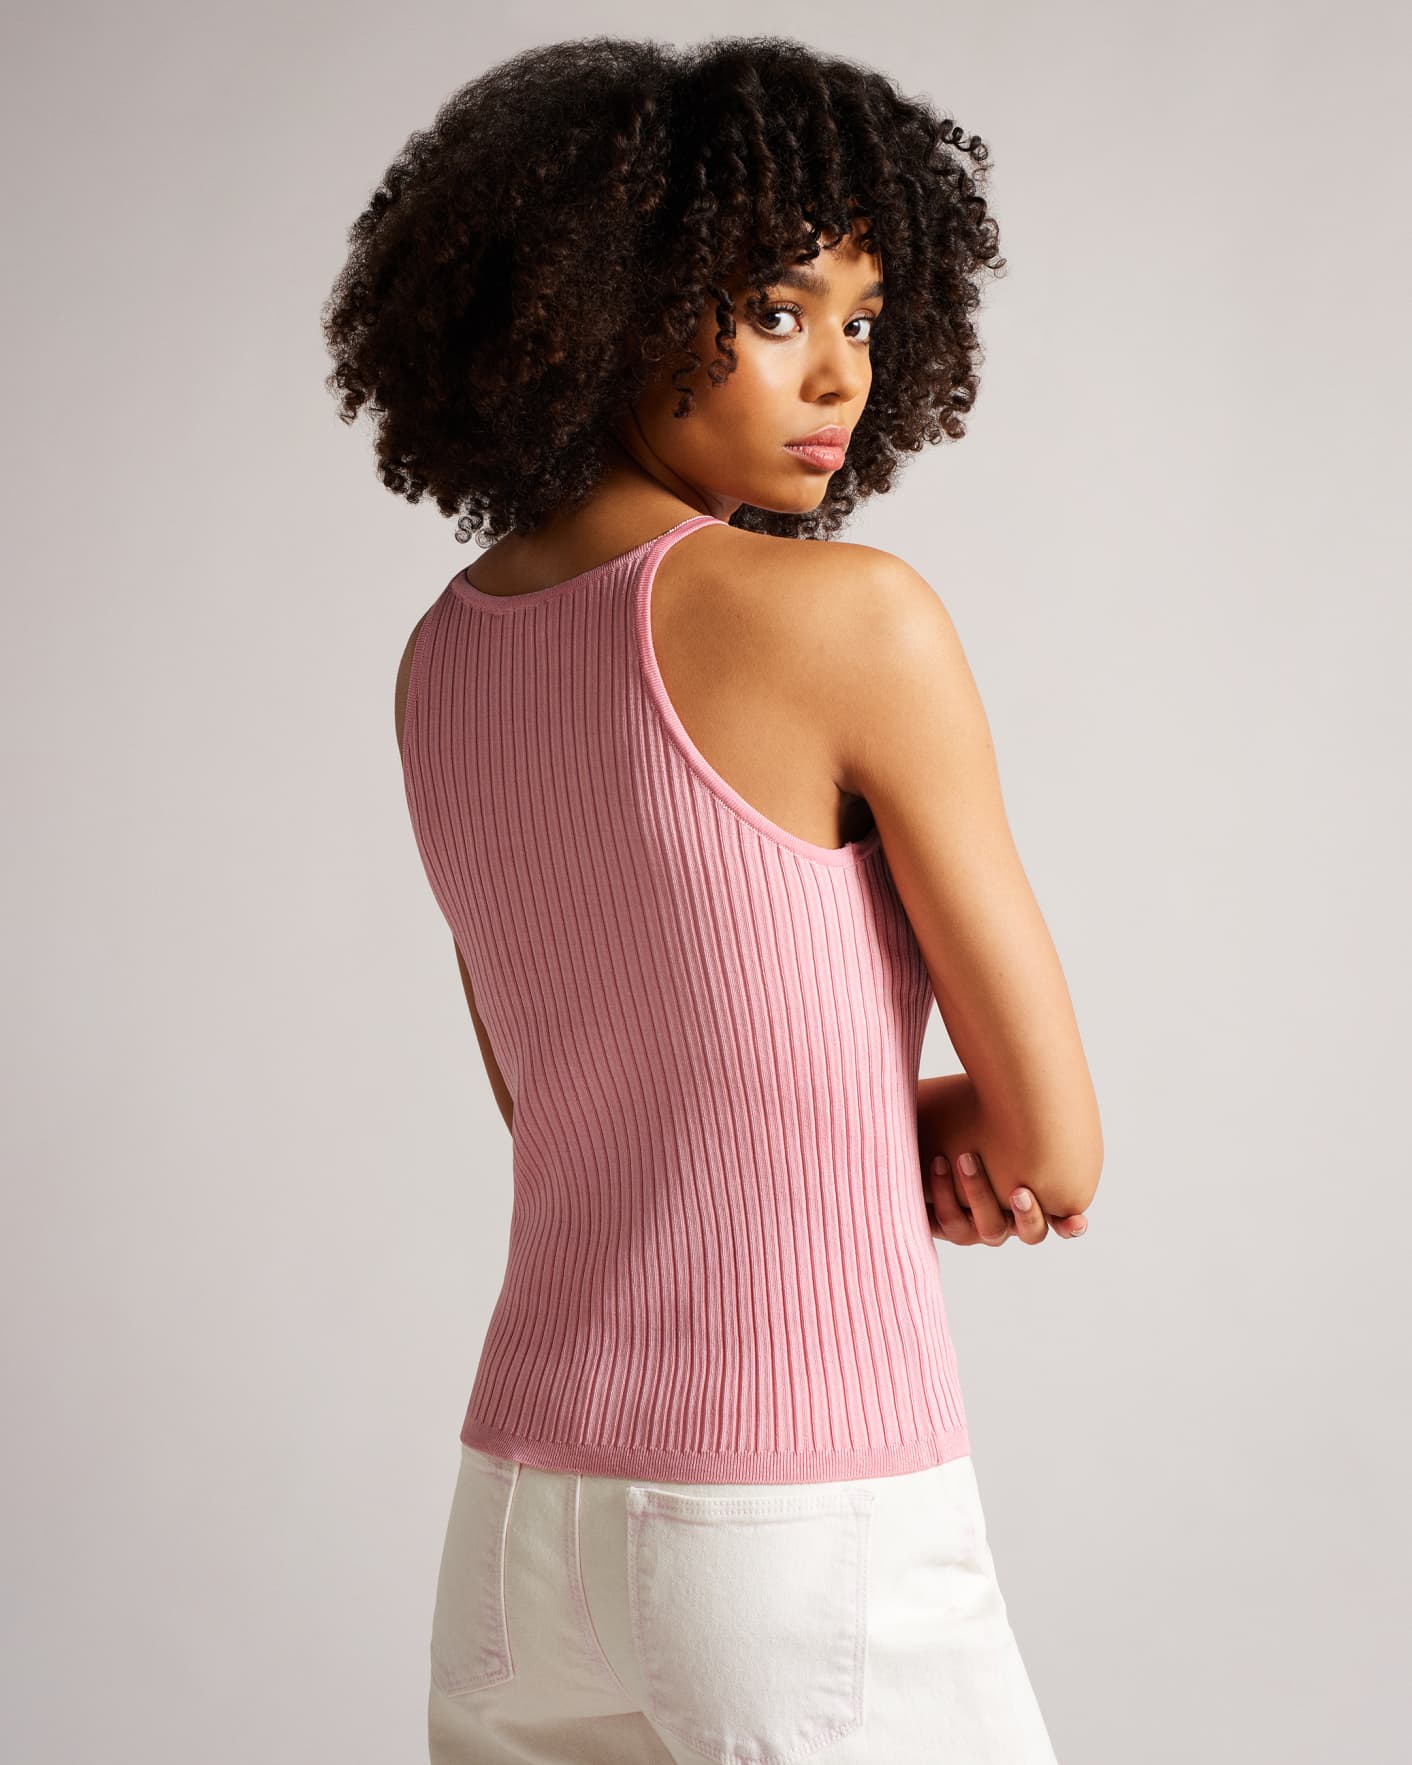 卸し売り購入 rielle riche (Pink) Tops Knit Yarn Mixed ニット/セーター